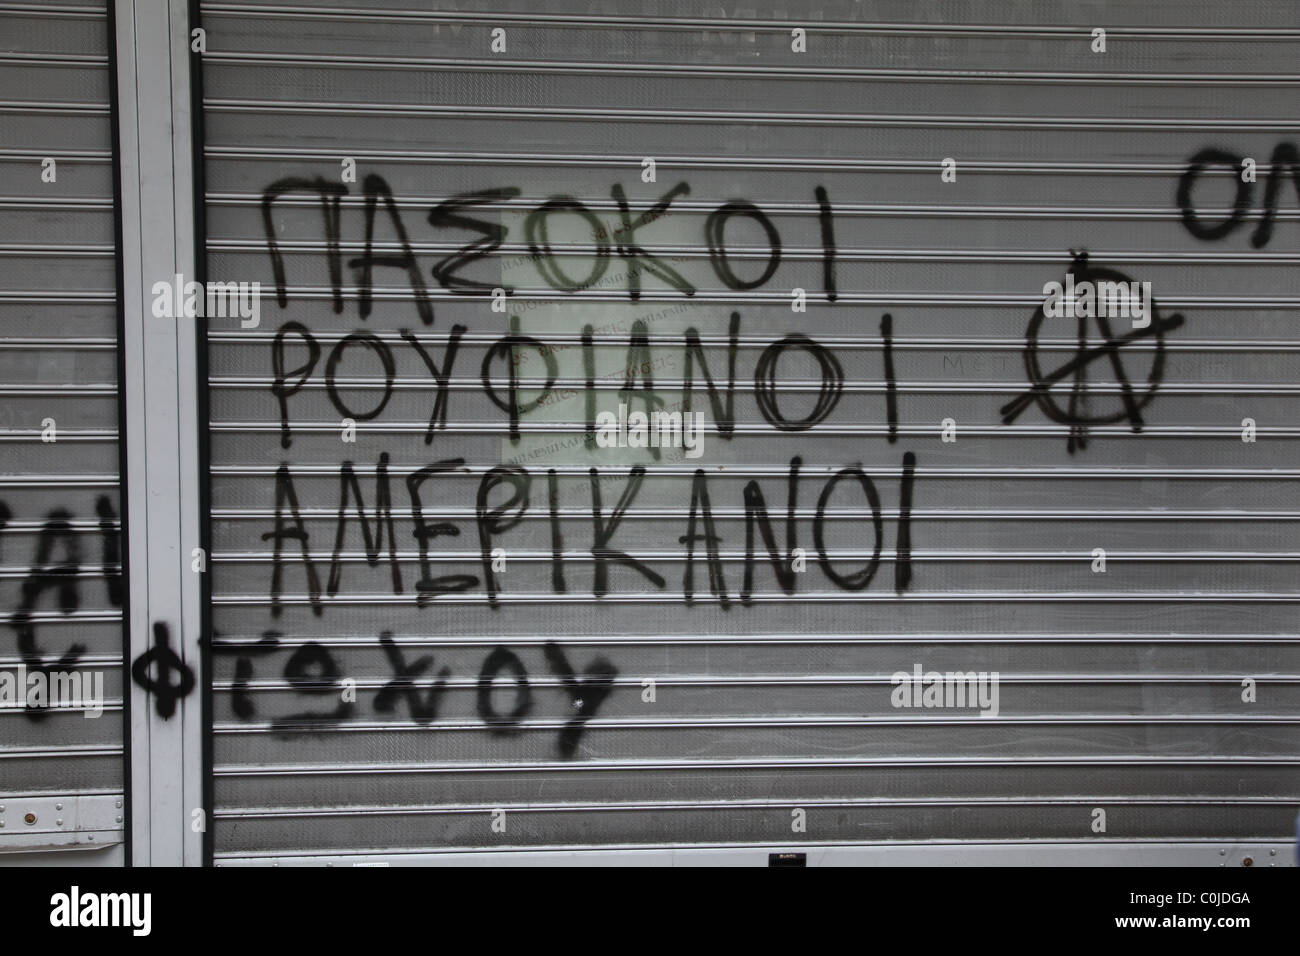 Athens, Greece, financial crisis, slogans Stock Photo